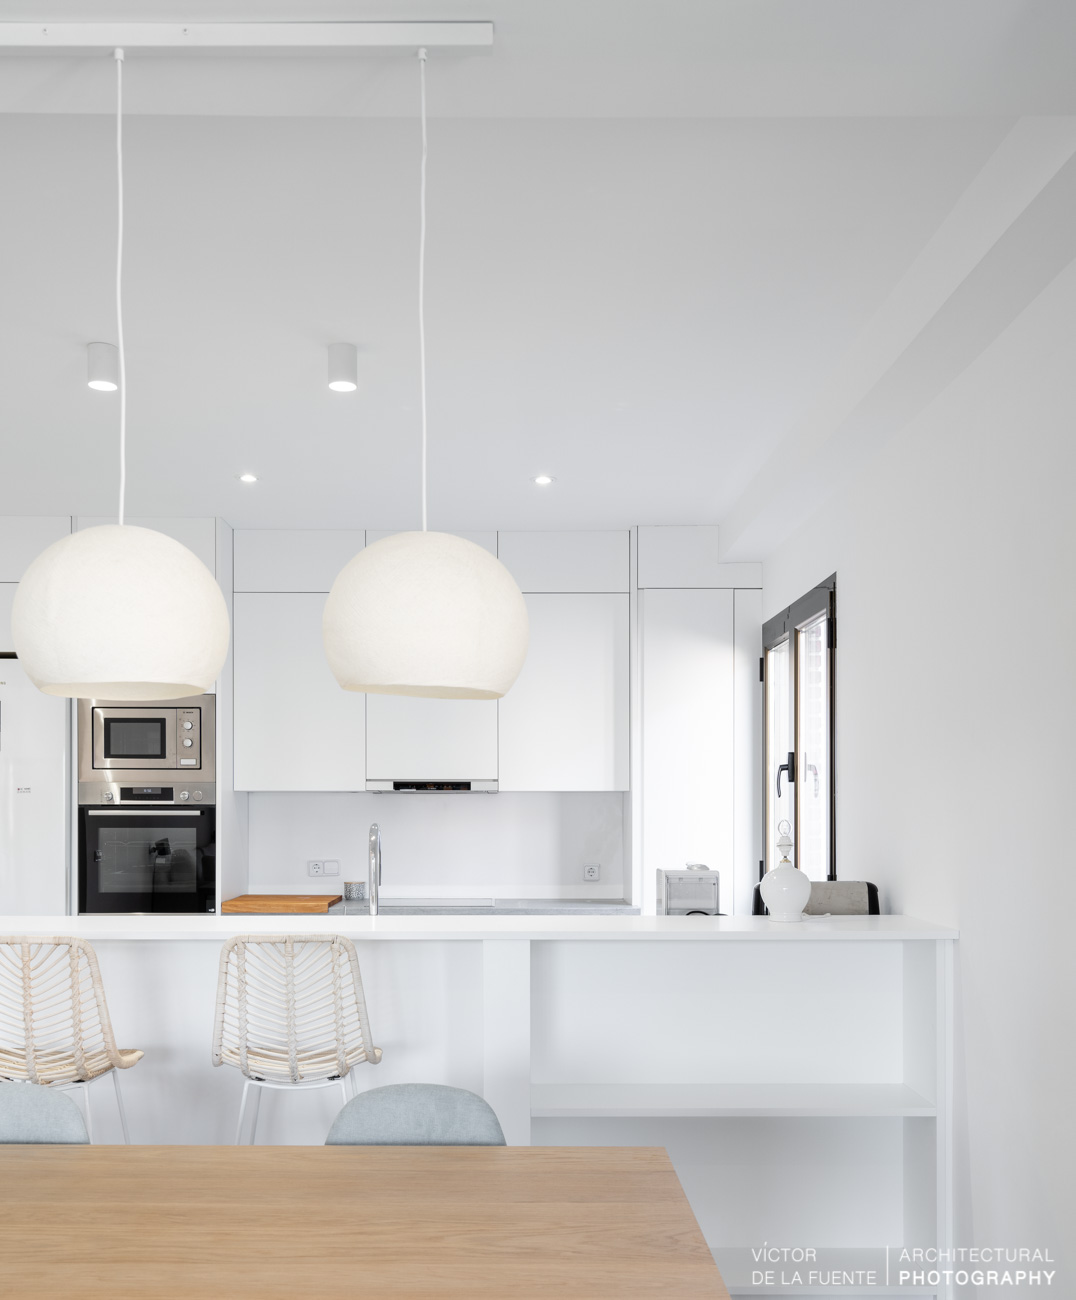 fotografia de interiorismo cocina con lamparas